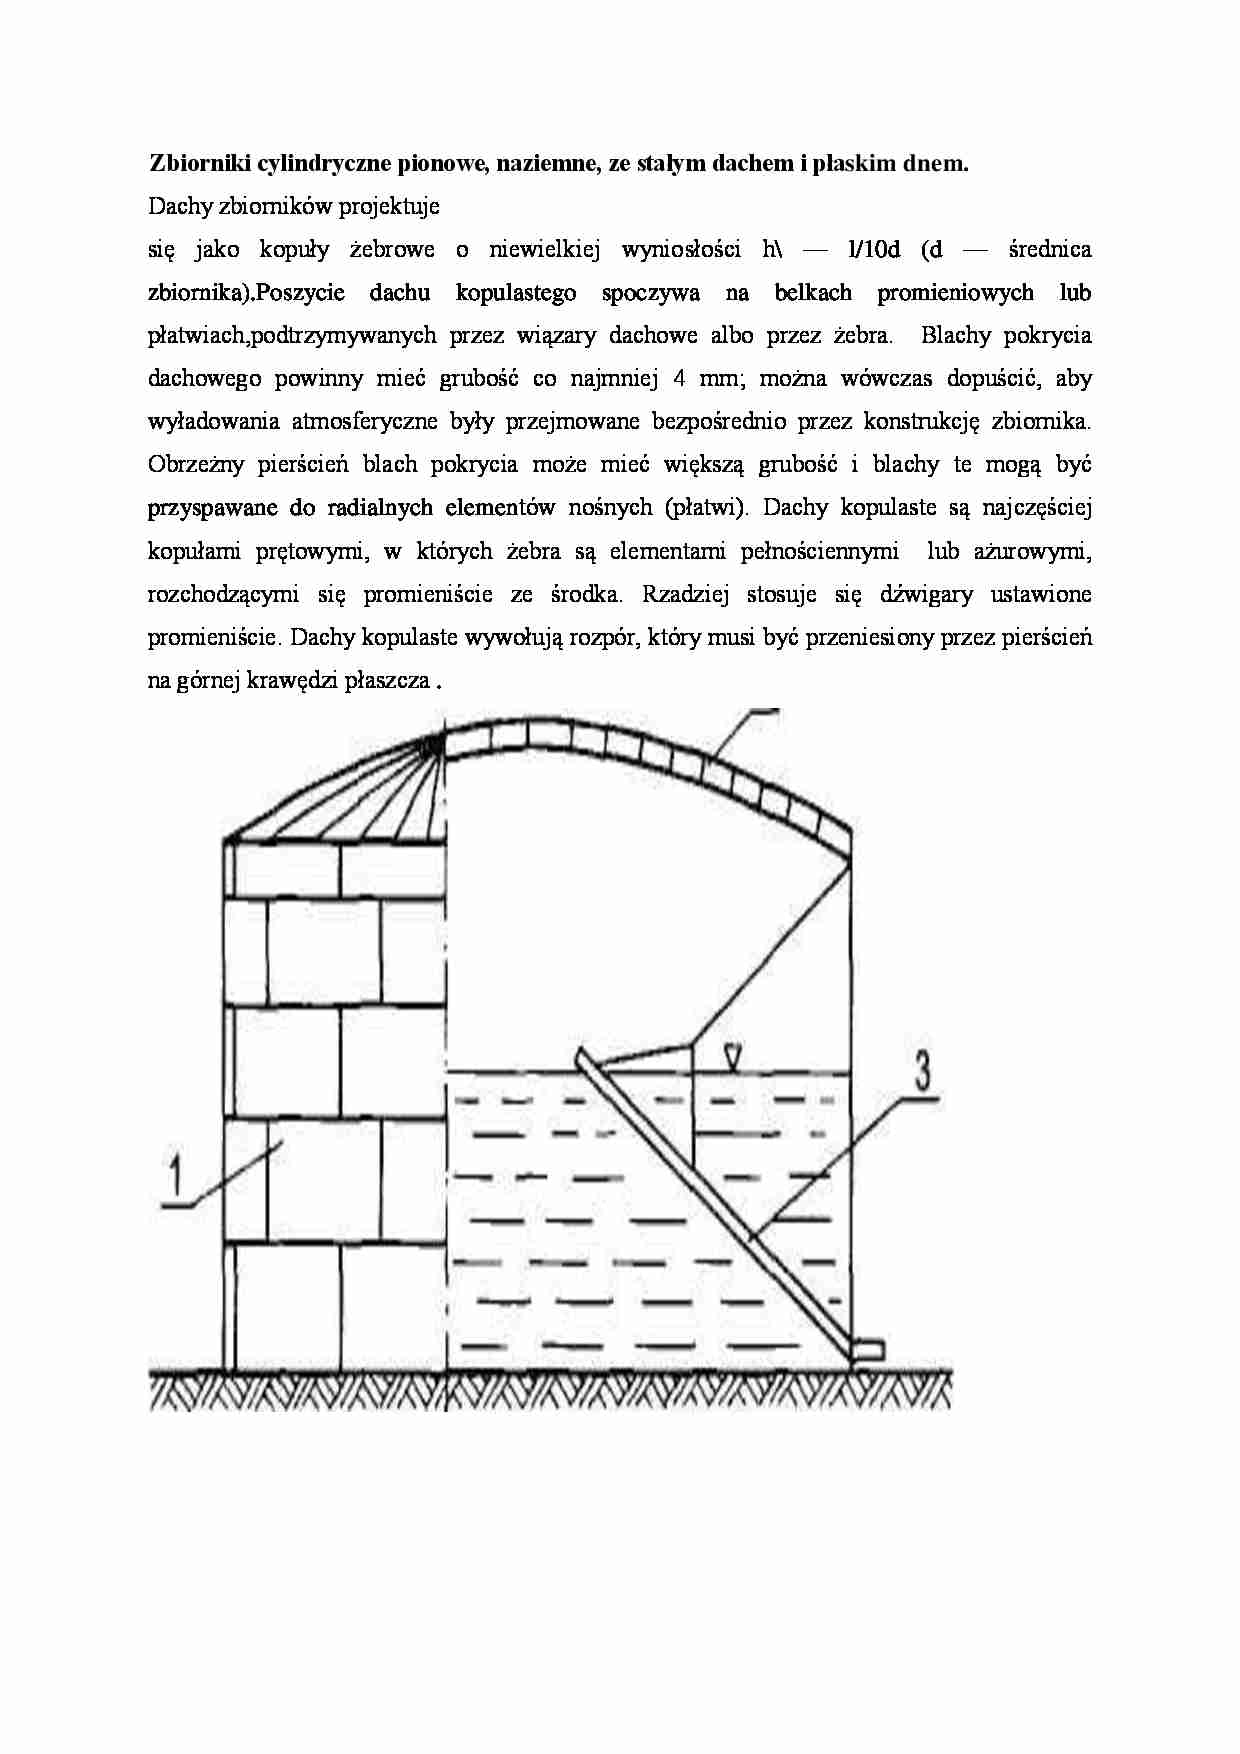 Zbiorniki cylindryczne pionowe - omówienie  - strona 1